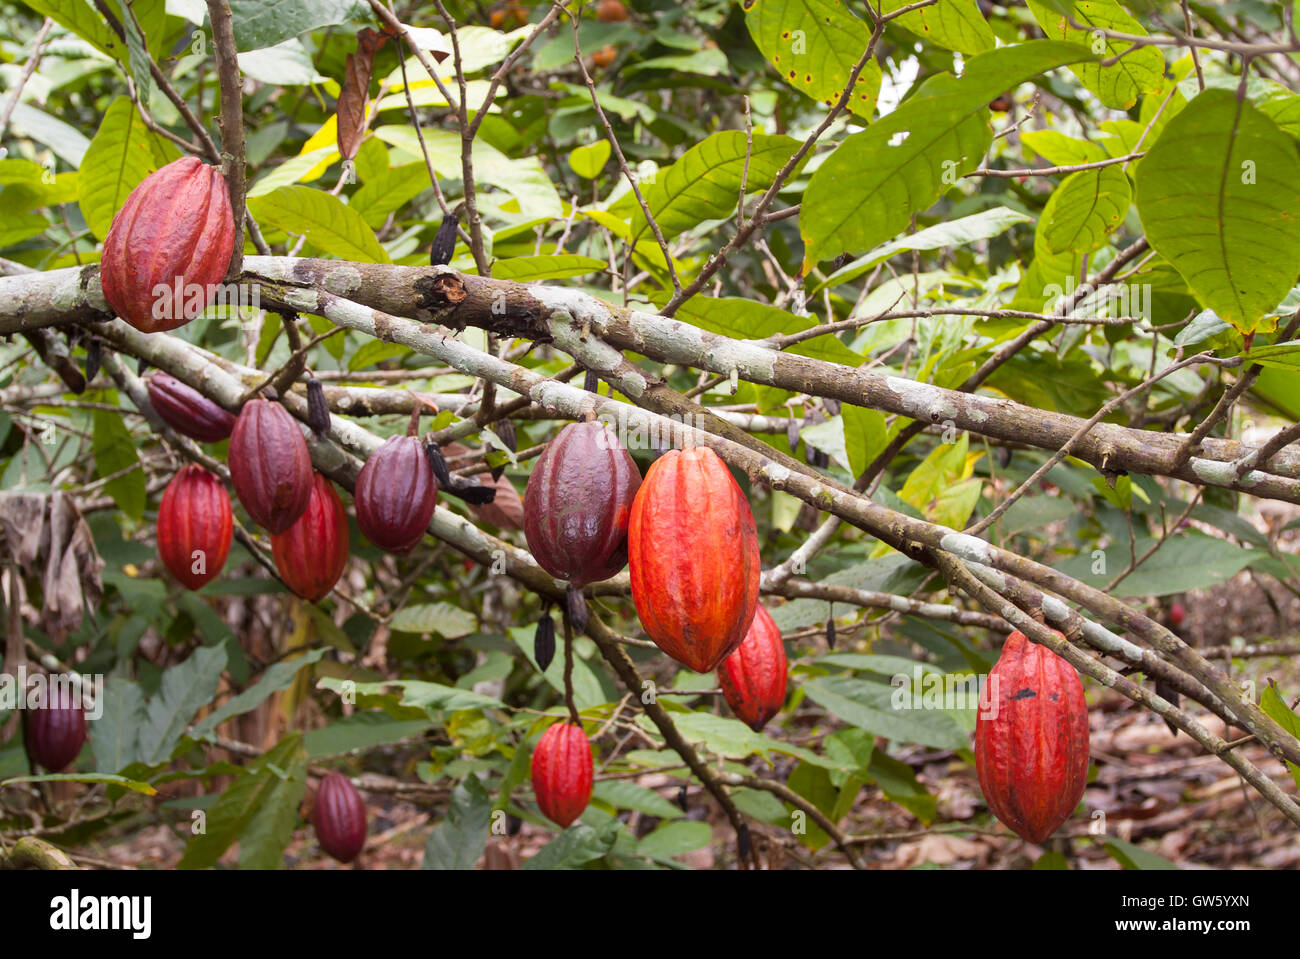 Kakao Fruchte Auf Den Baumen Wachst Im Tropischen Regenwald Sao Tome E Principe Stockfotografie Alamy